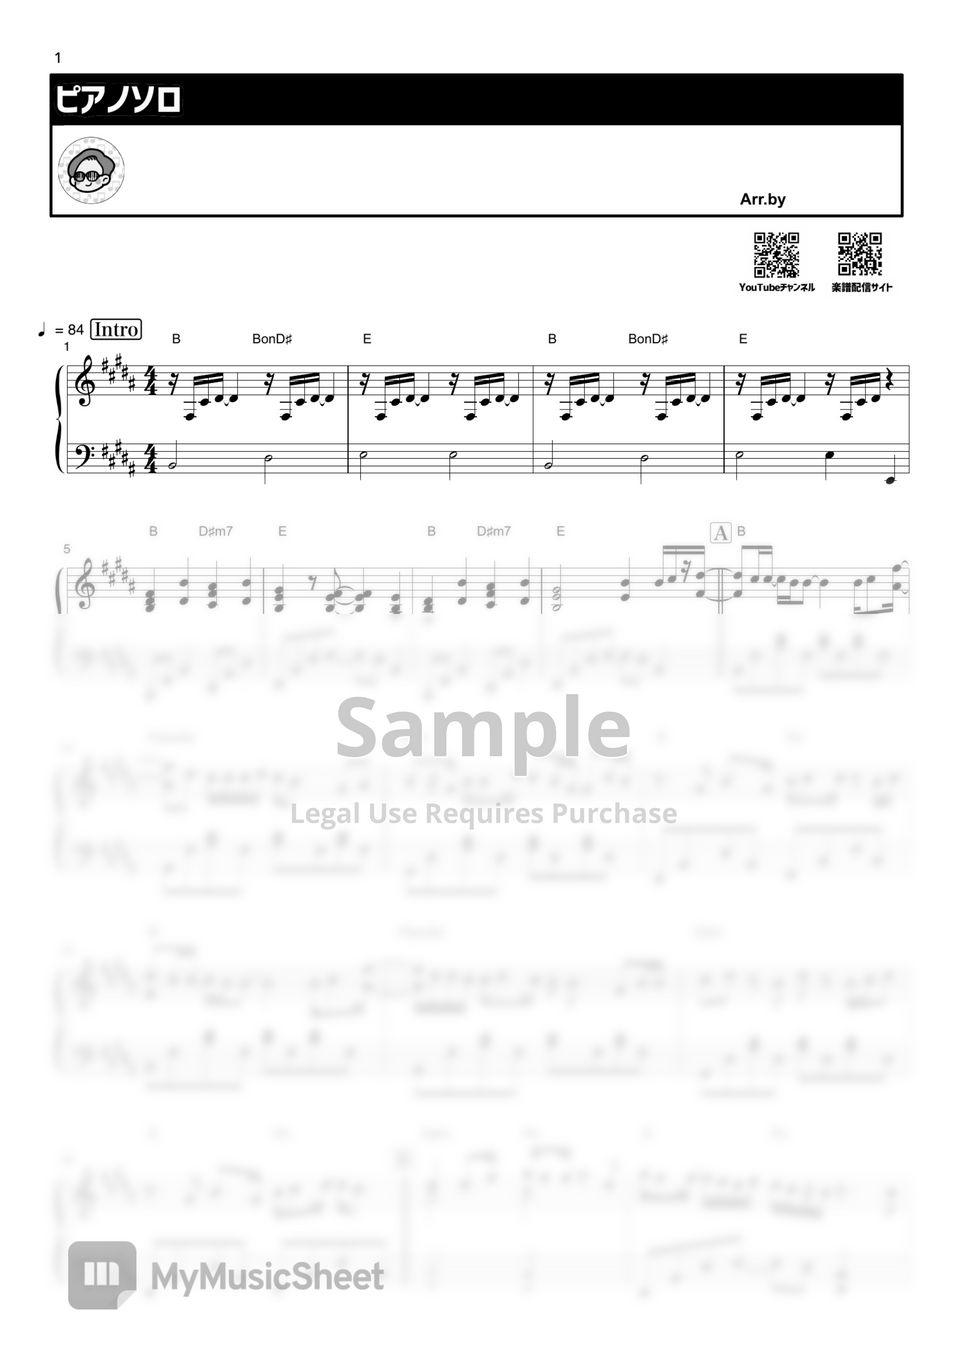 SaucyDog - 今更だって僕は言うかな(Imasaradatte boku ha iukana) by THETA PIANO